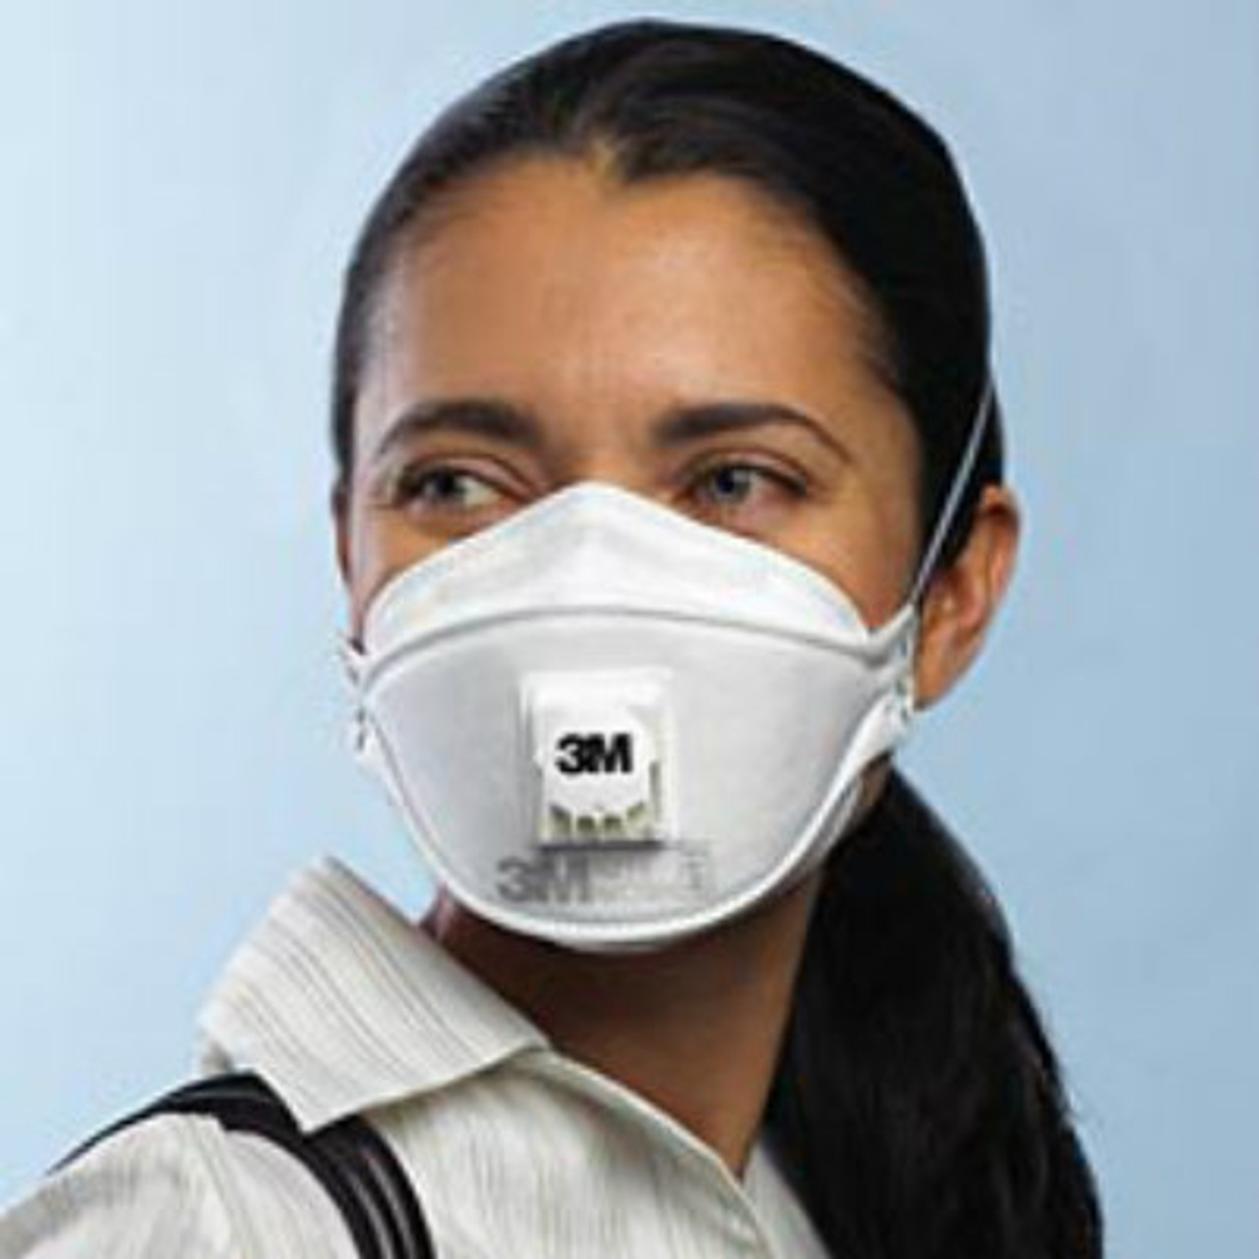 Respirator Equipment Personal